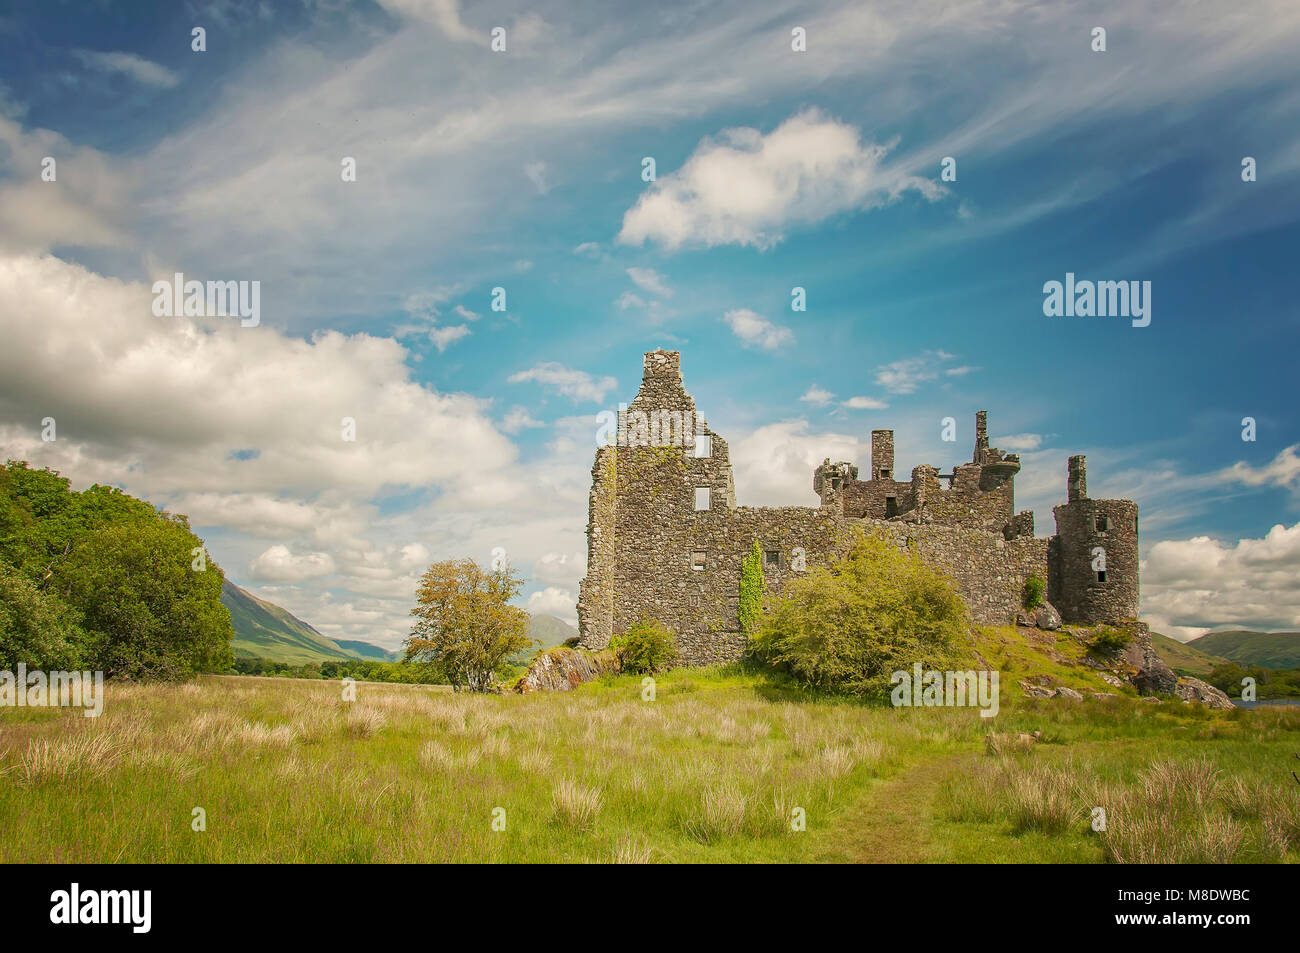 Le Château de Kilchurn, une structure du 15ème siècle sur les rives du Loch Awe, en Argyll and Bute, Ecosse le 08 juillet 2013. Banque D'Images